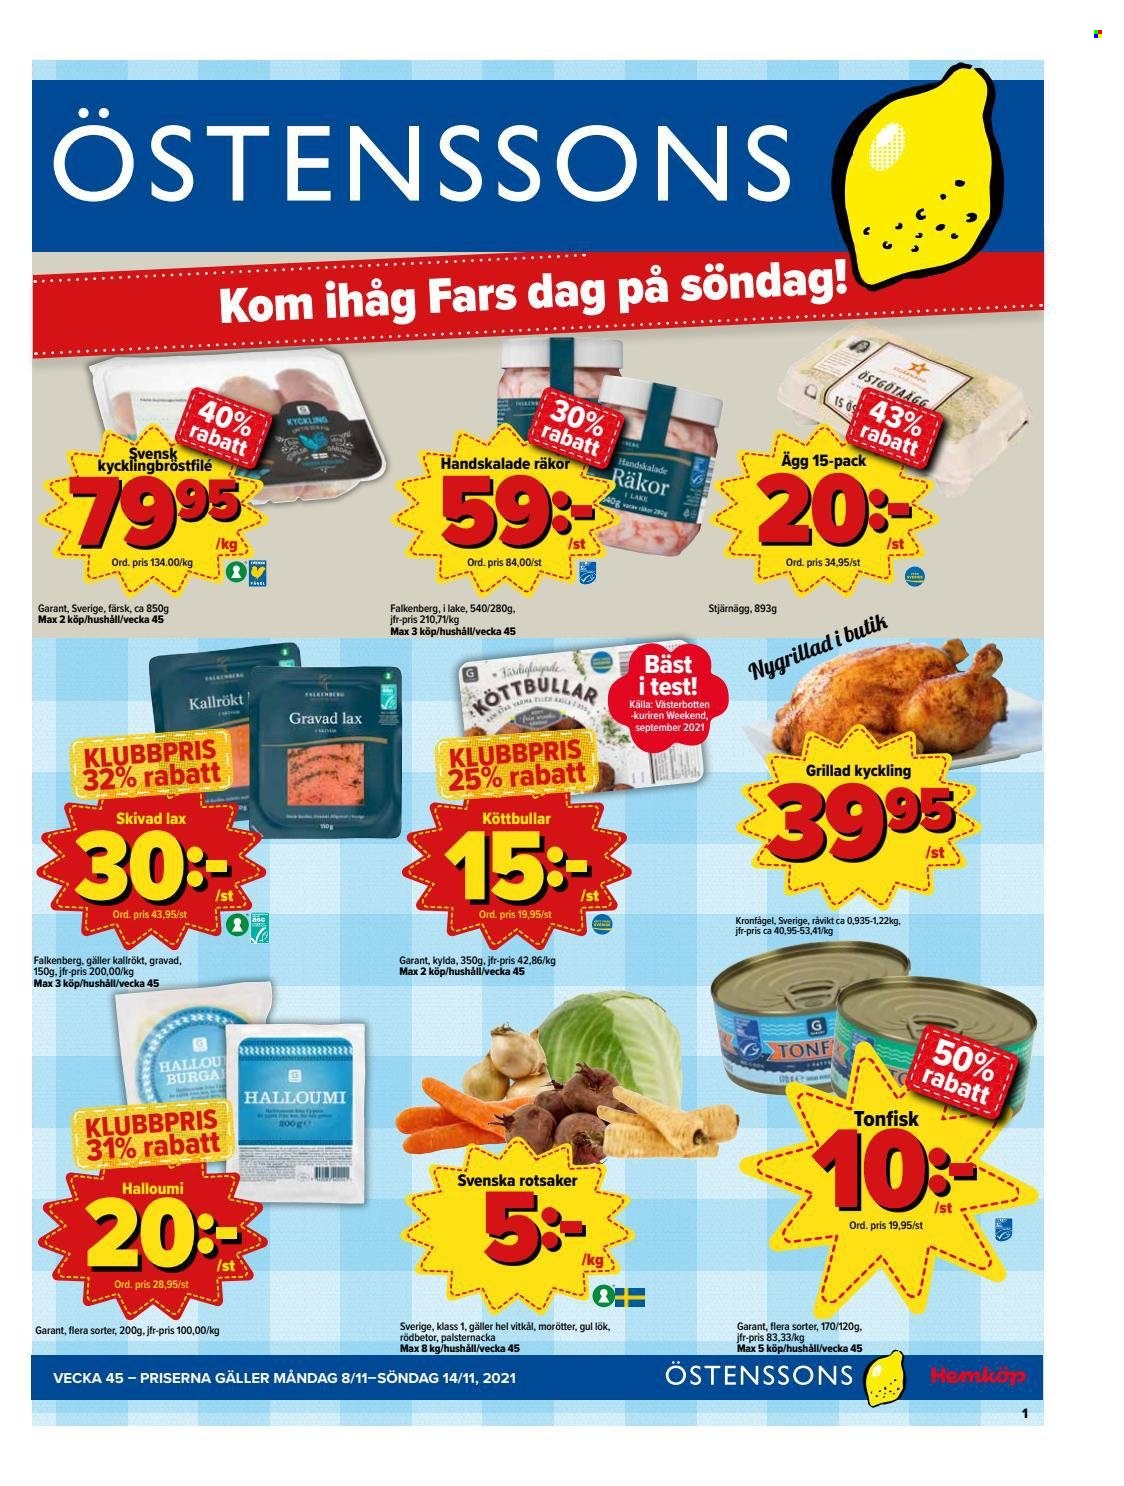 Östenssons reklamblad - 8/11 2021 - 14/11 2021.